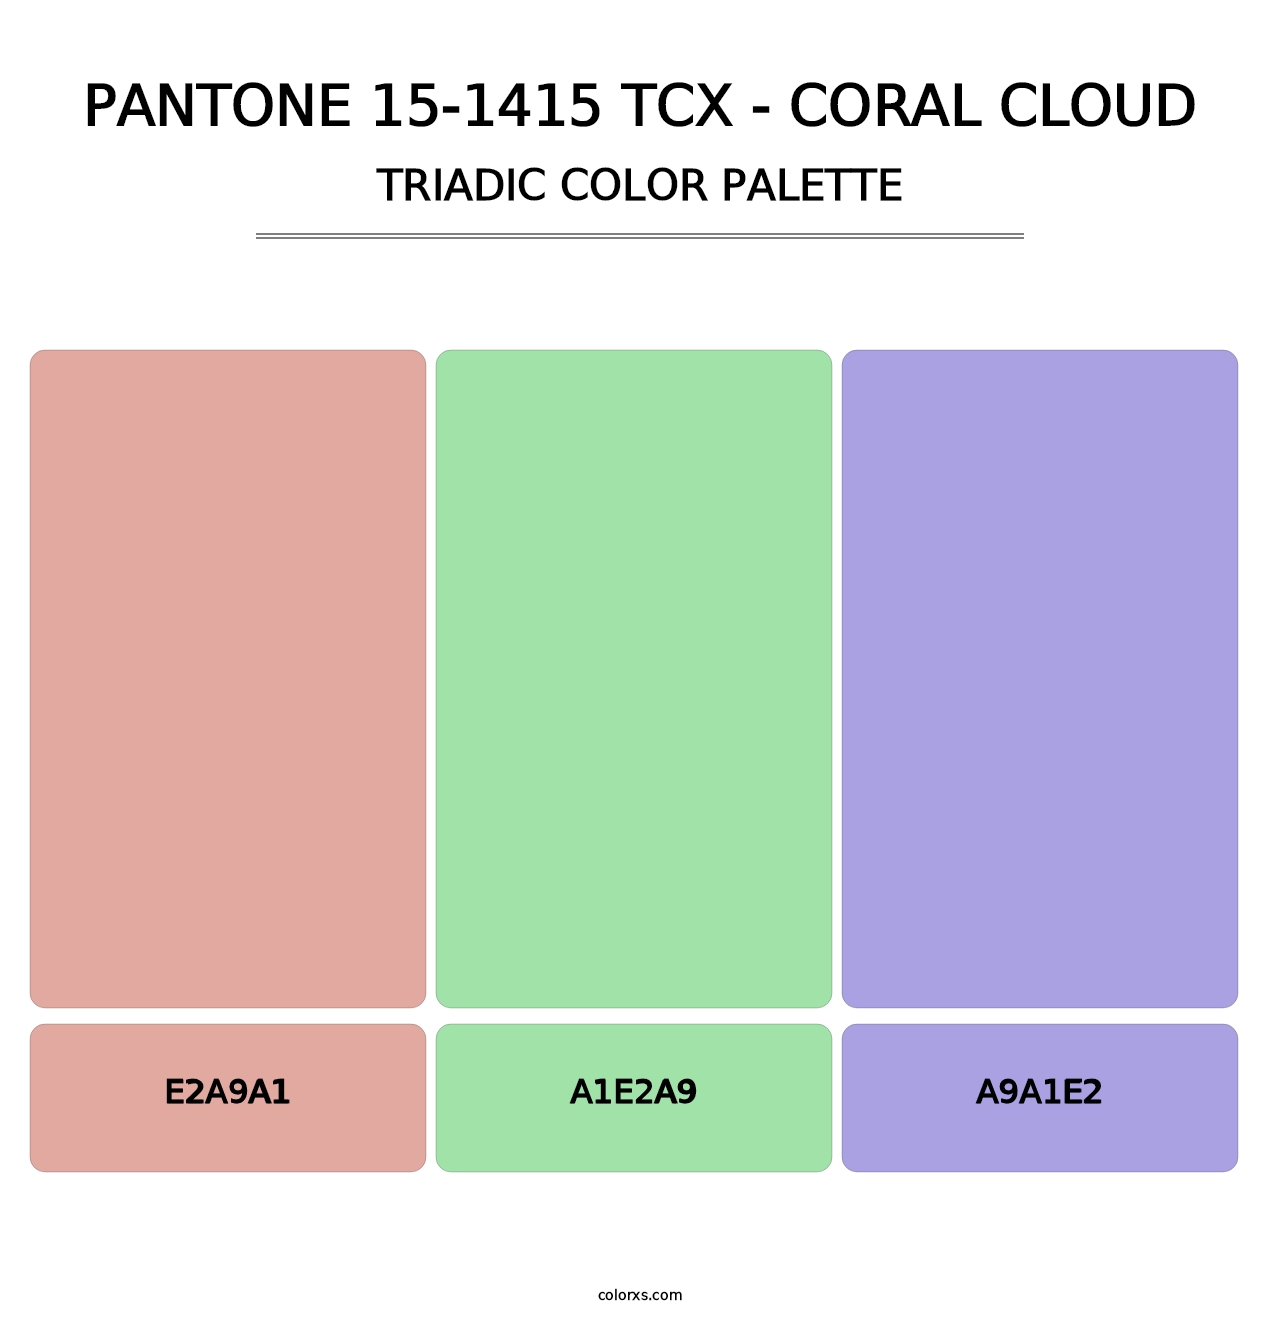 PANTONE 15-1415 TCX - Coral Cloud - Triadic Color Palette